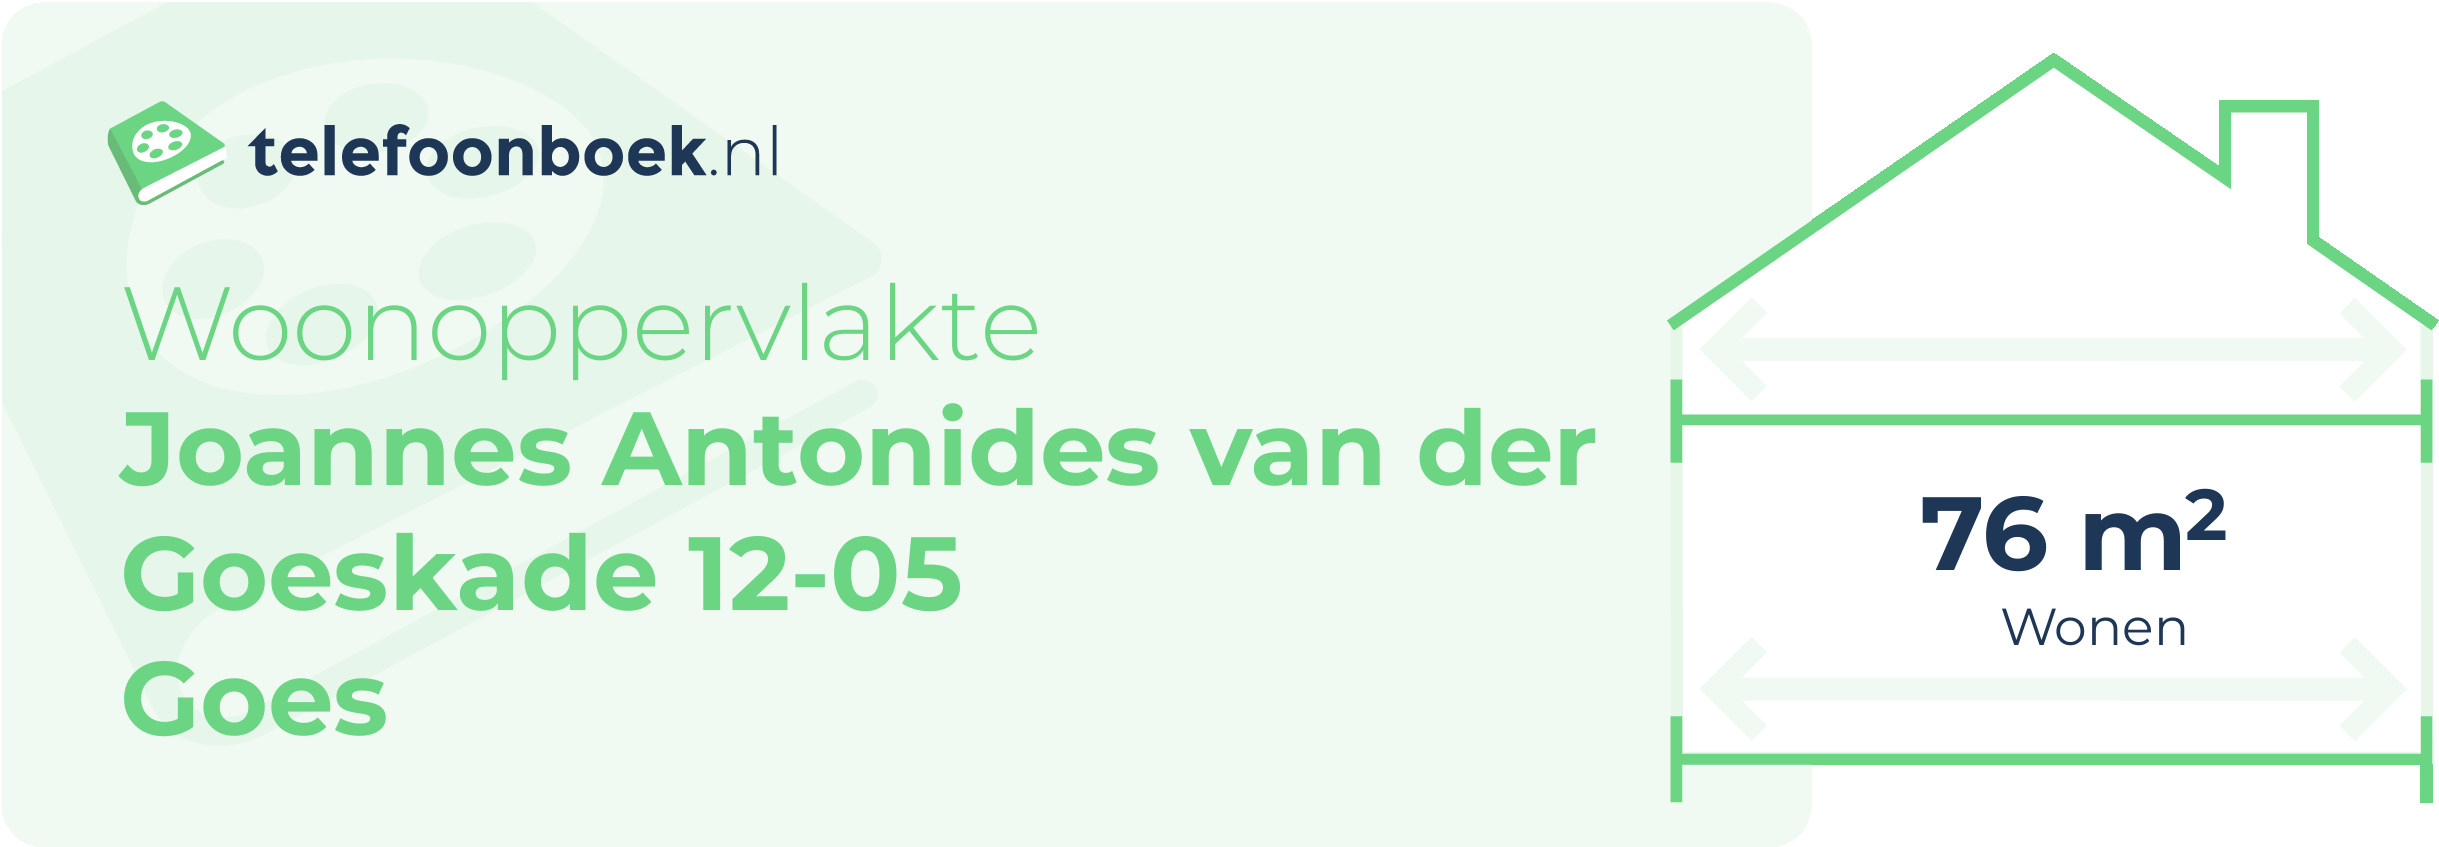 Woonoppervlakte Joannes Antonides Van Der Goeskade 12-05 Goes